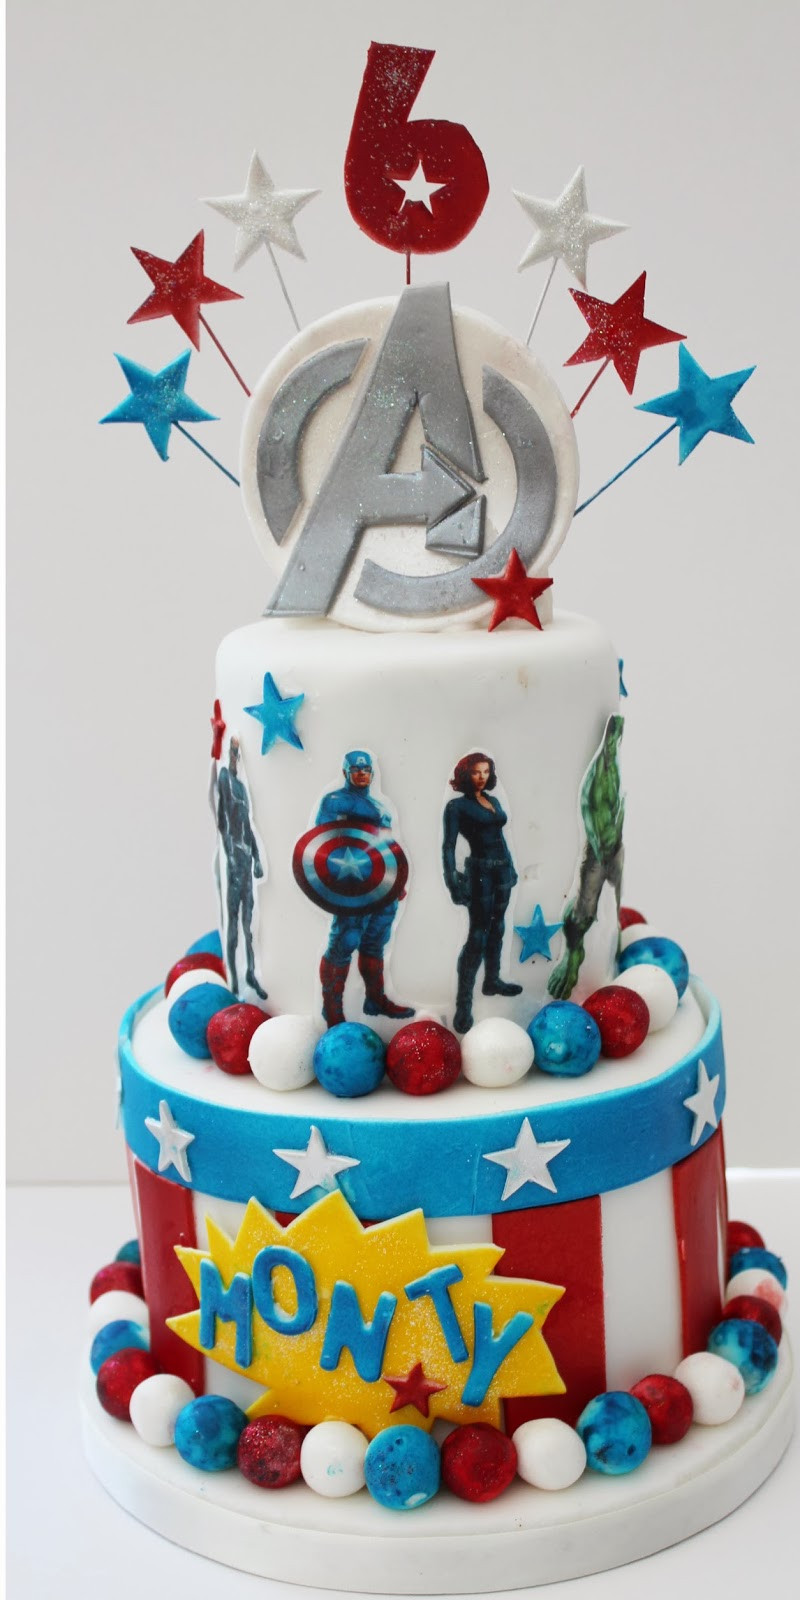 Avenger Birthday Cakes
 Avengers Birthday Cakes